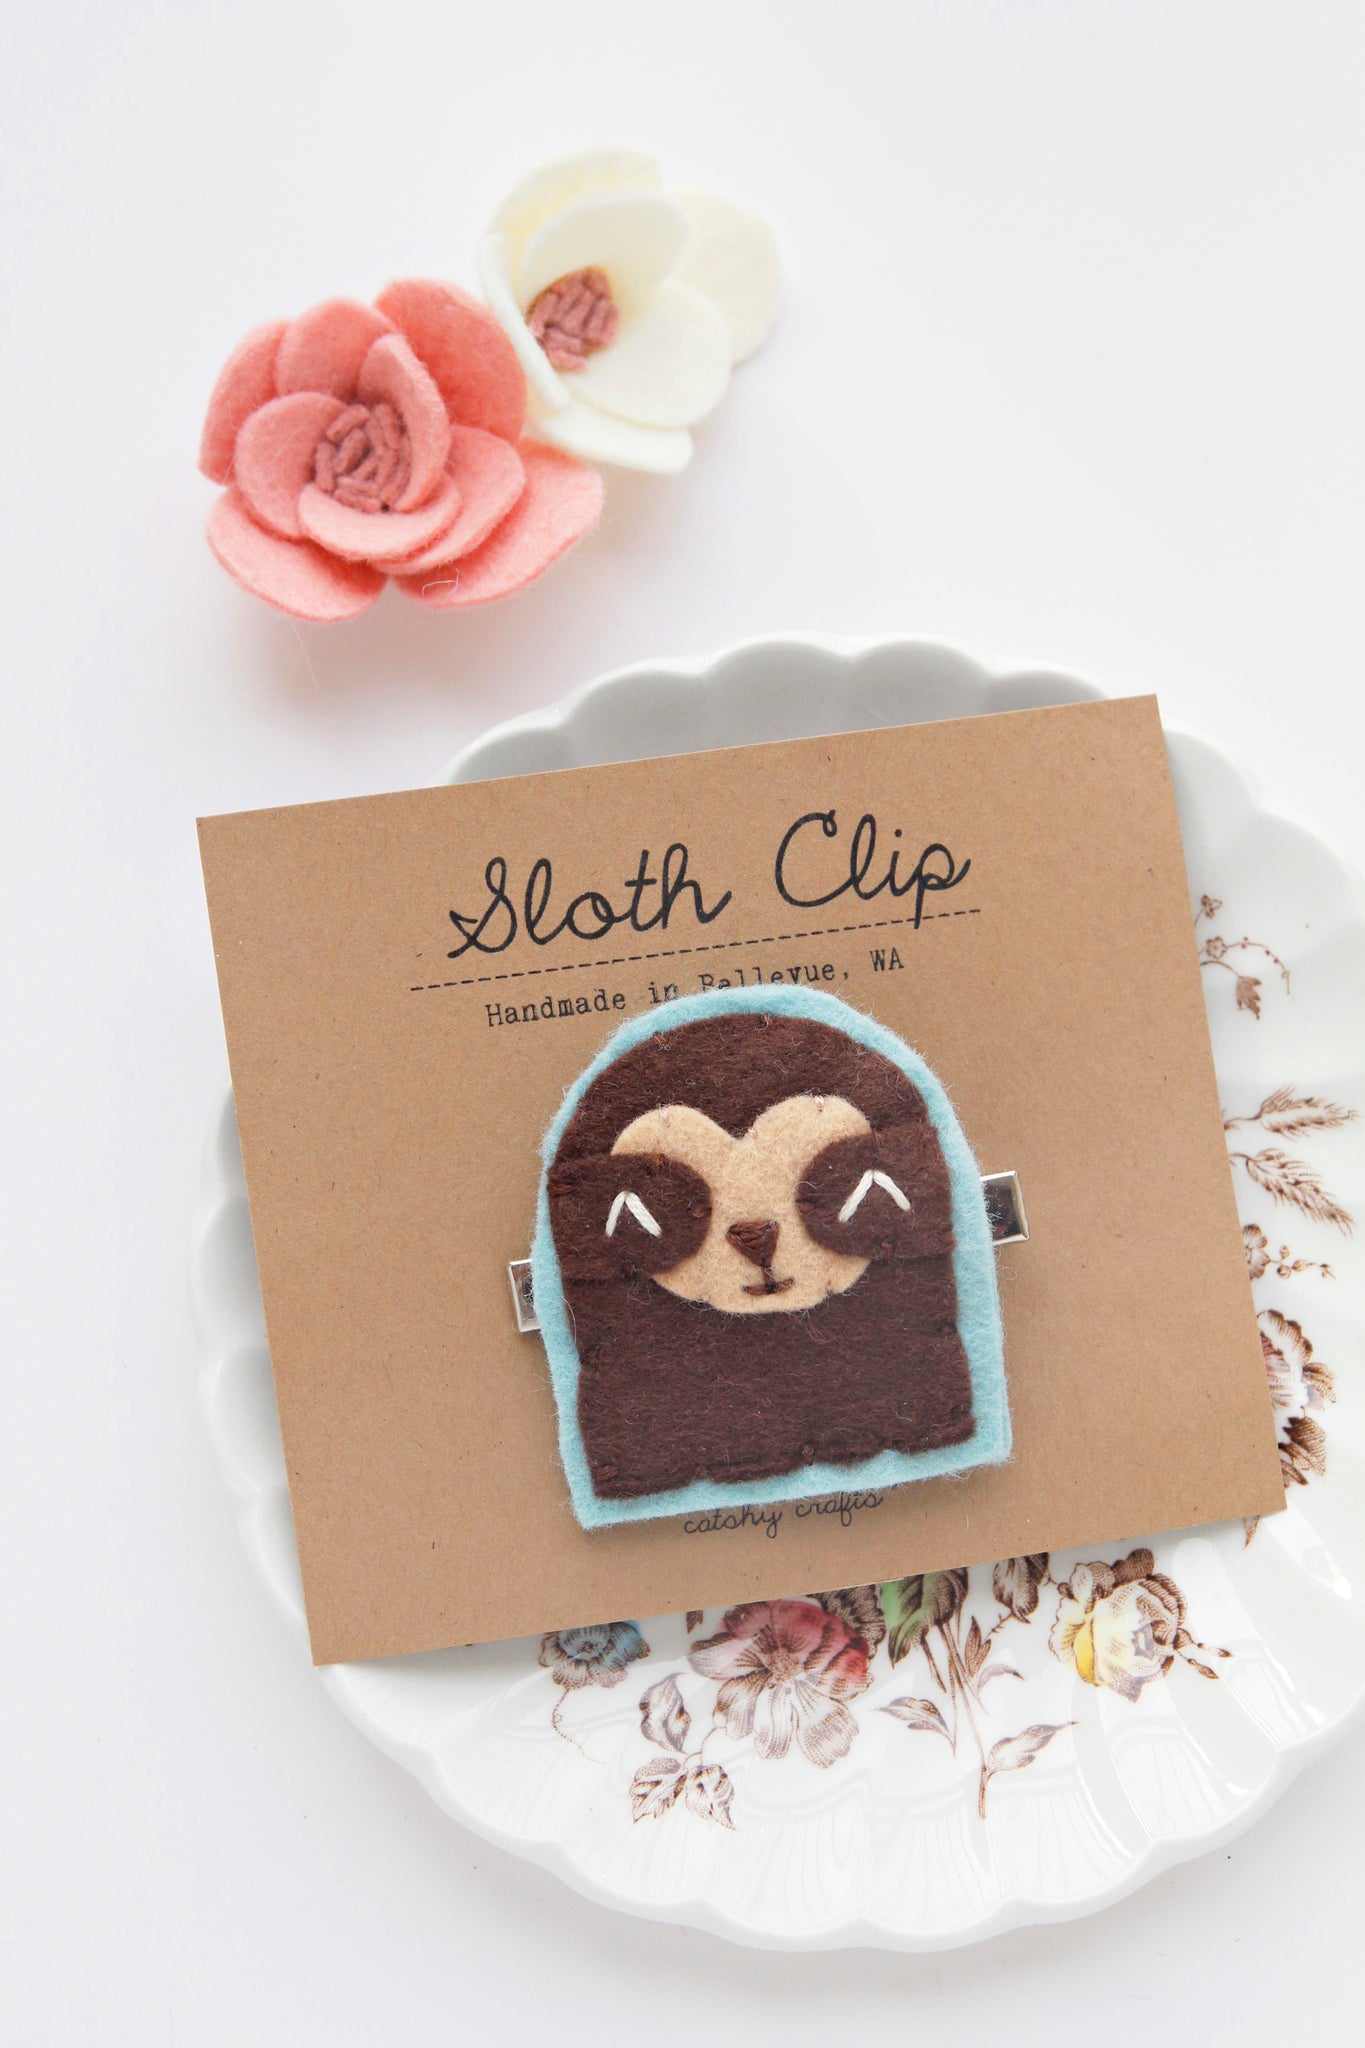 Sloth Hair Clip